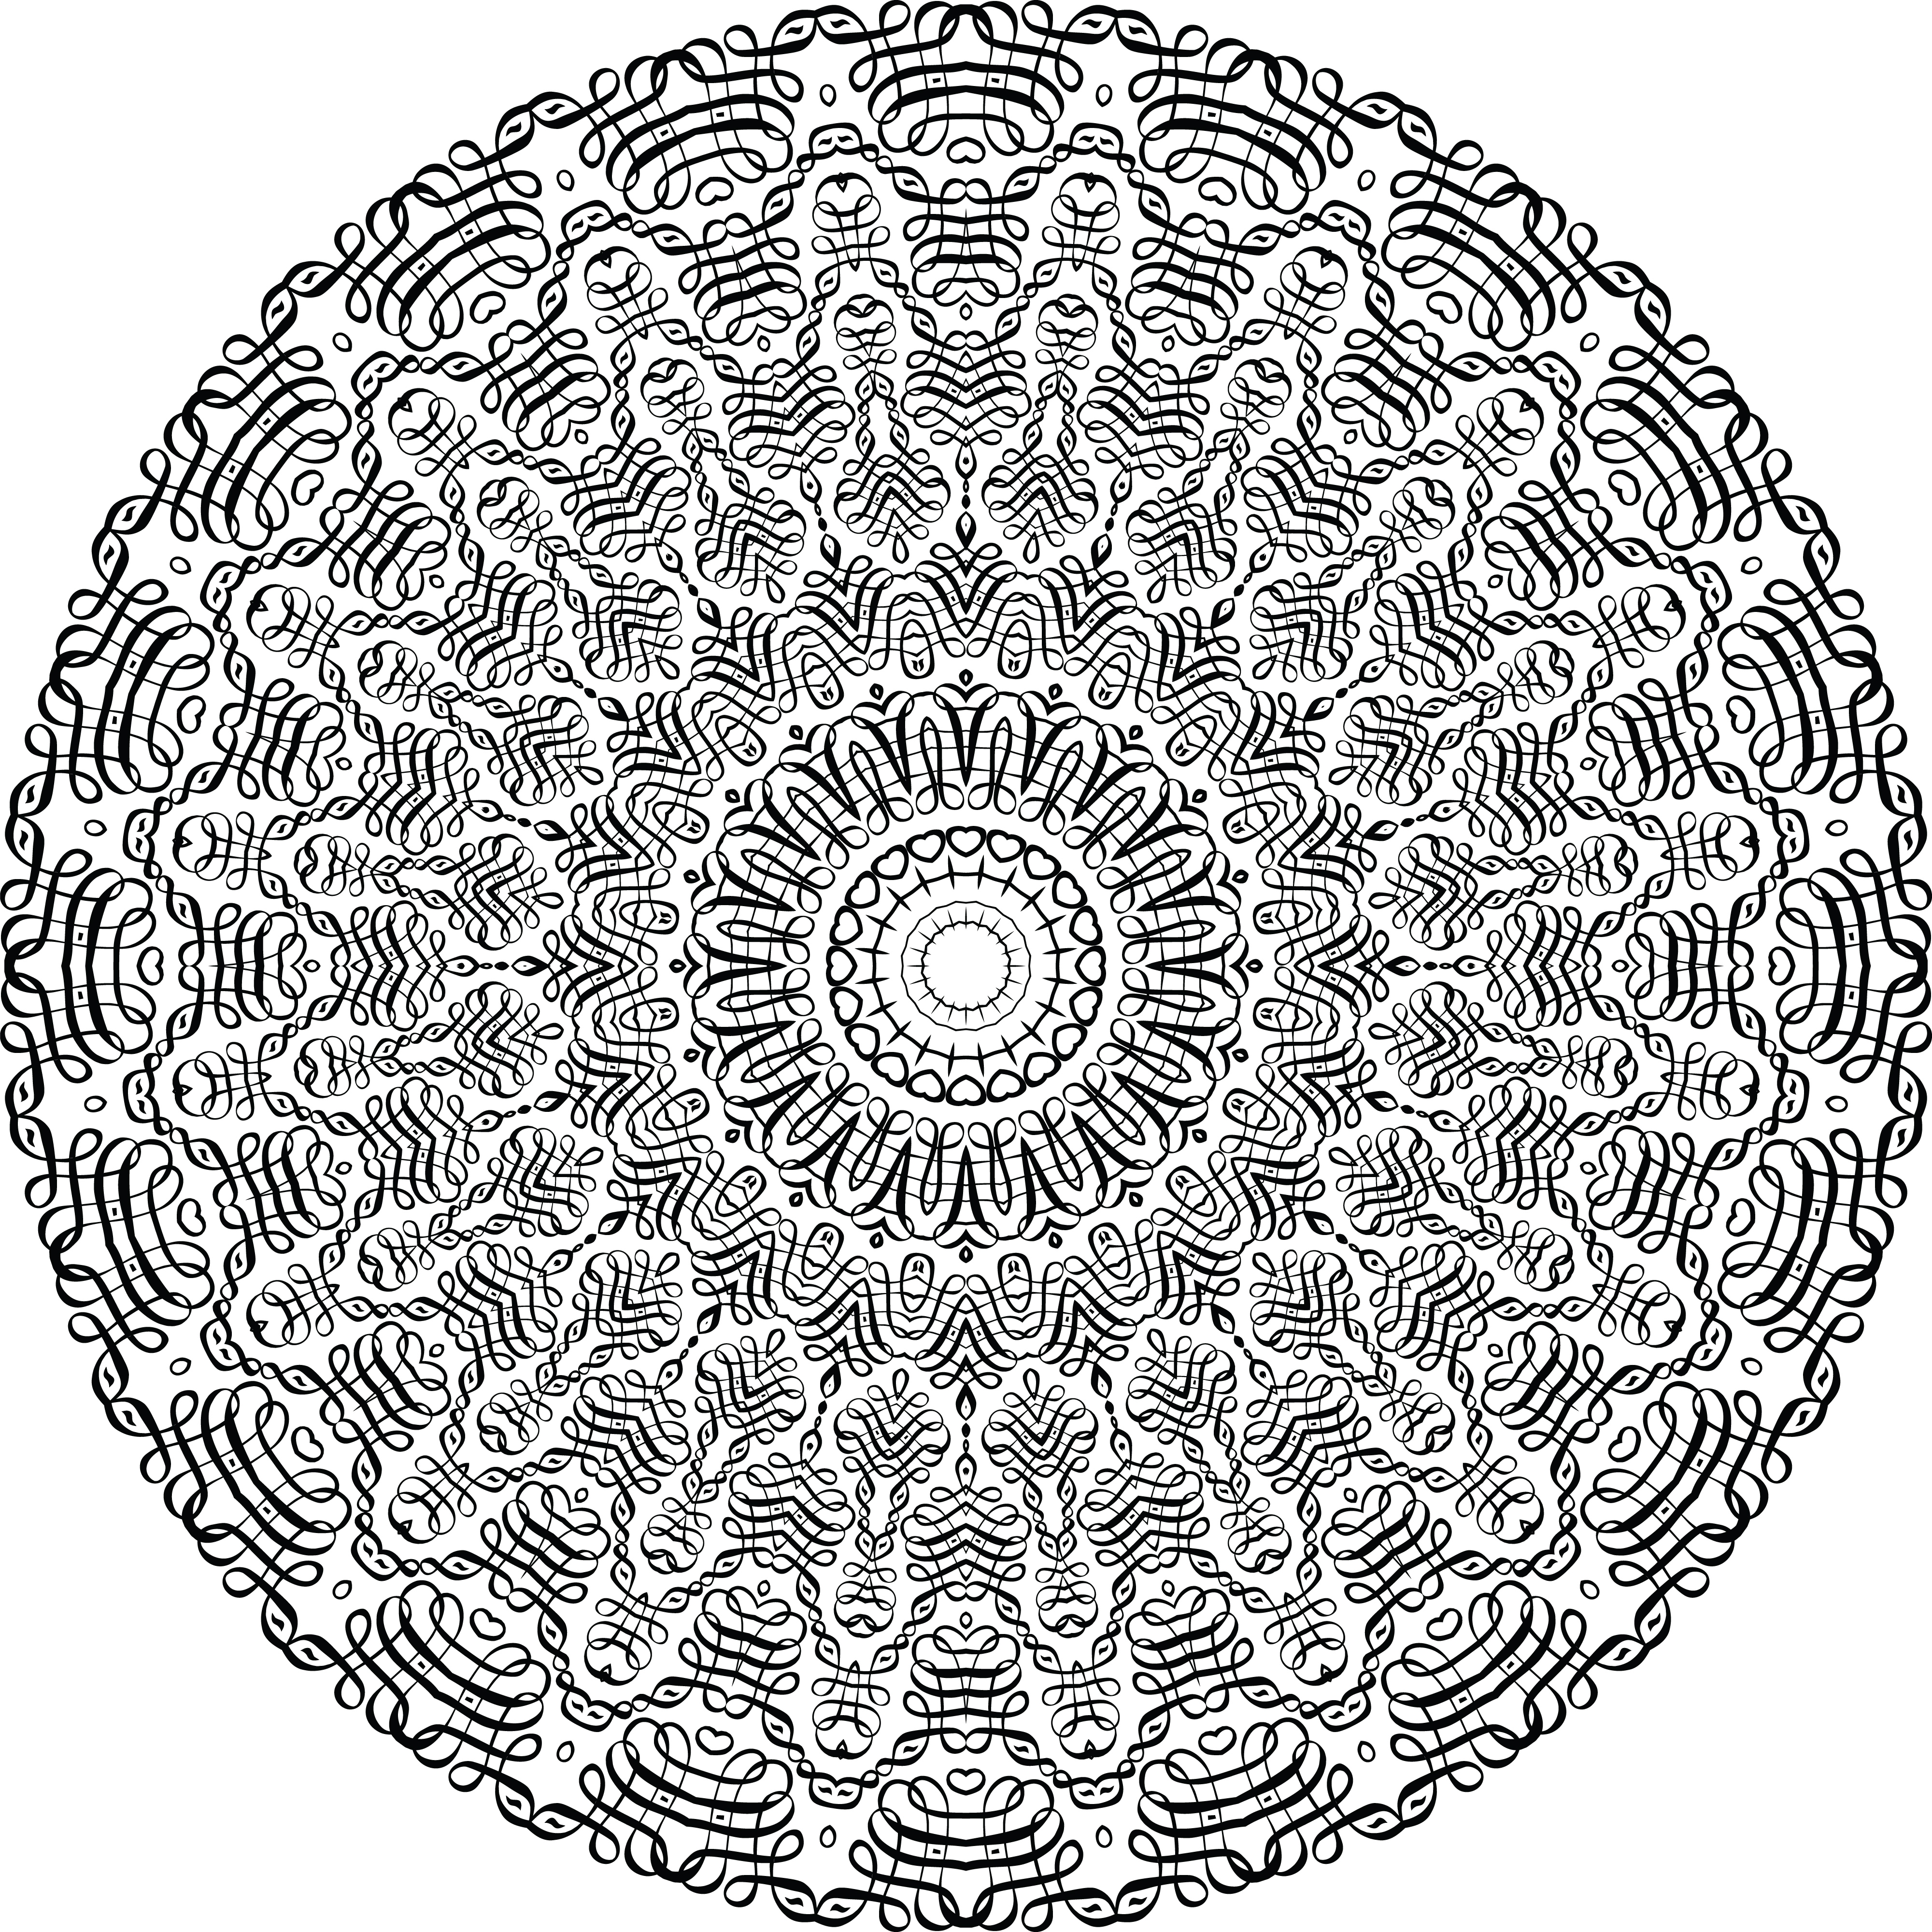 E Circle Mandala Art